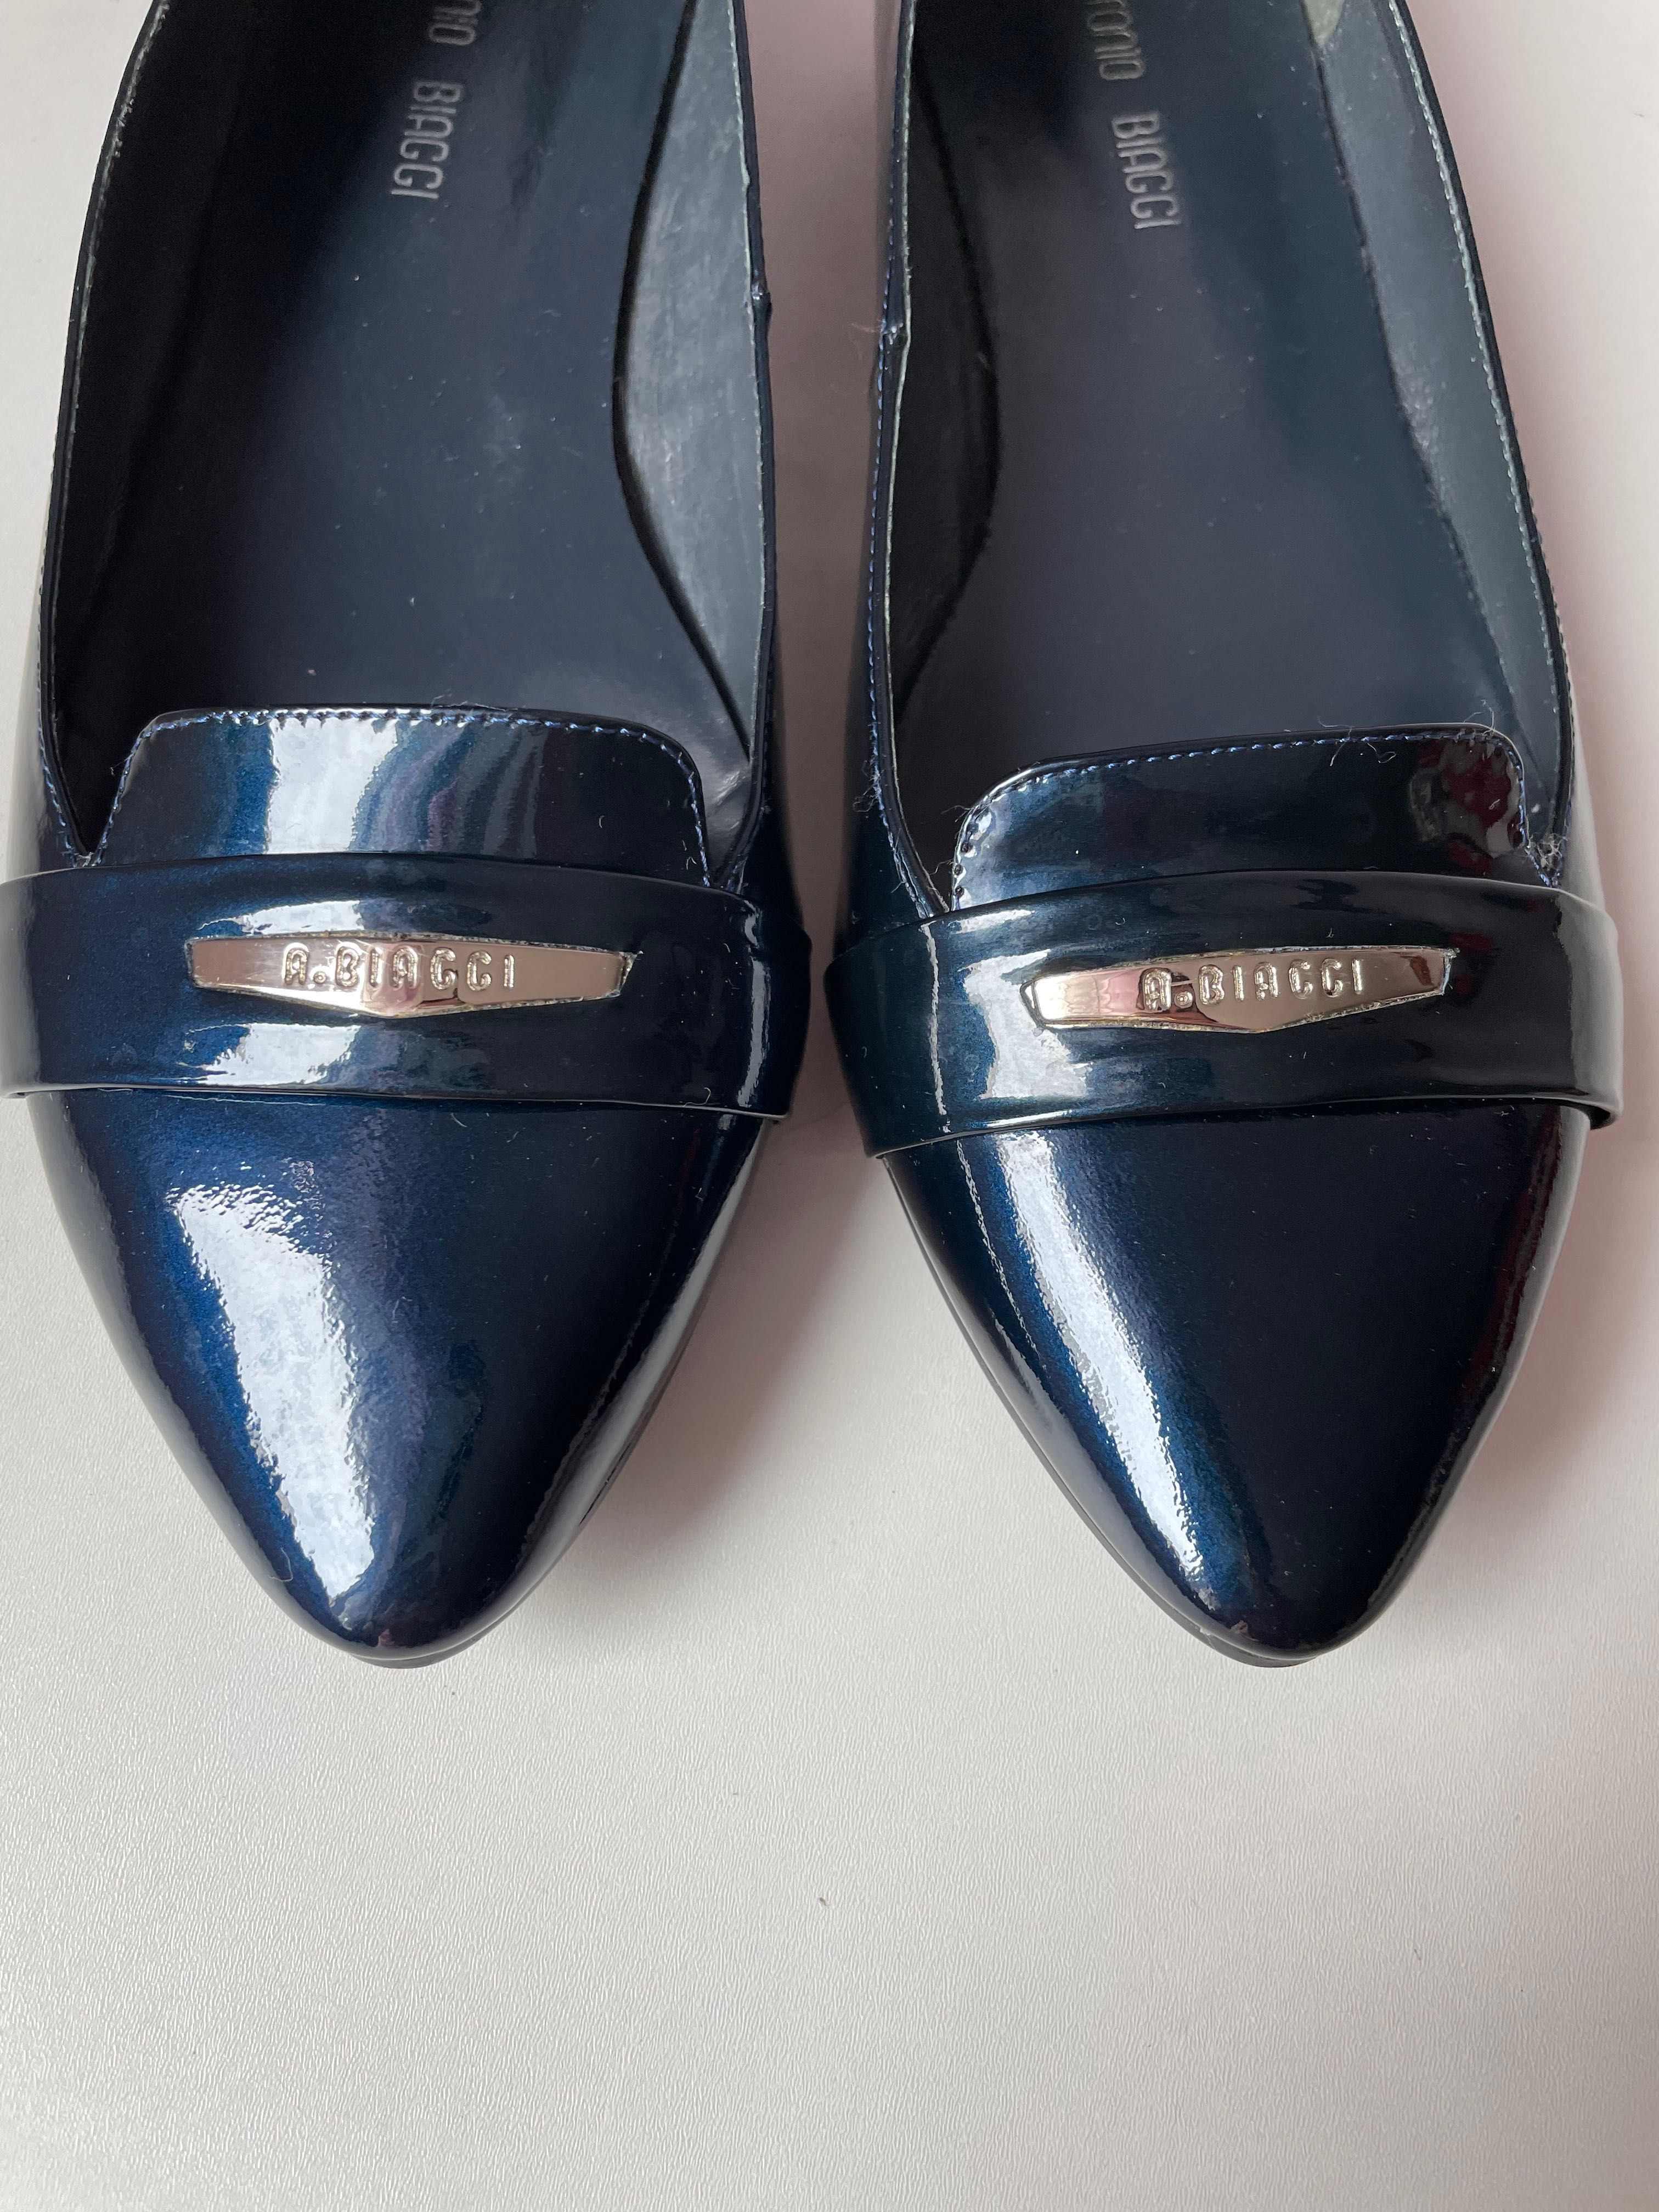 Балетки (туфли) синие лакированные Antonio Biaggi